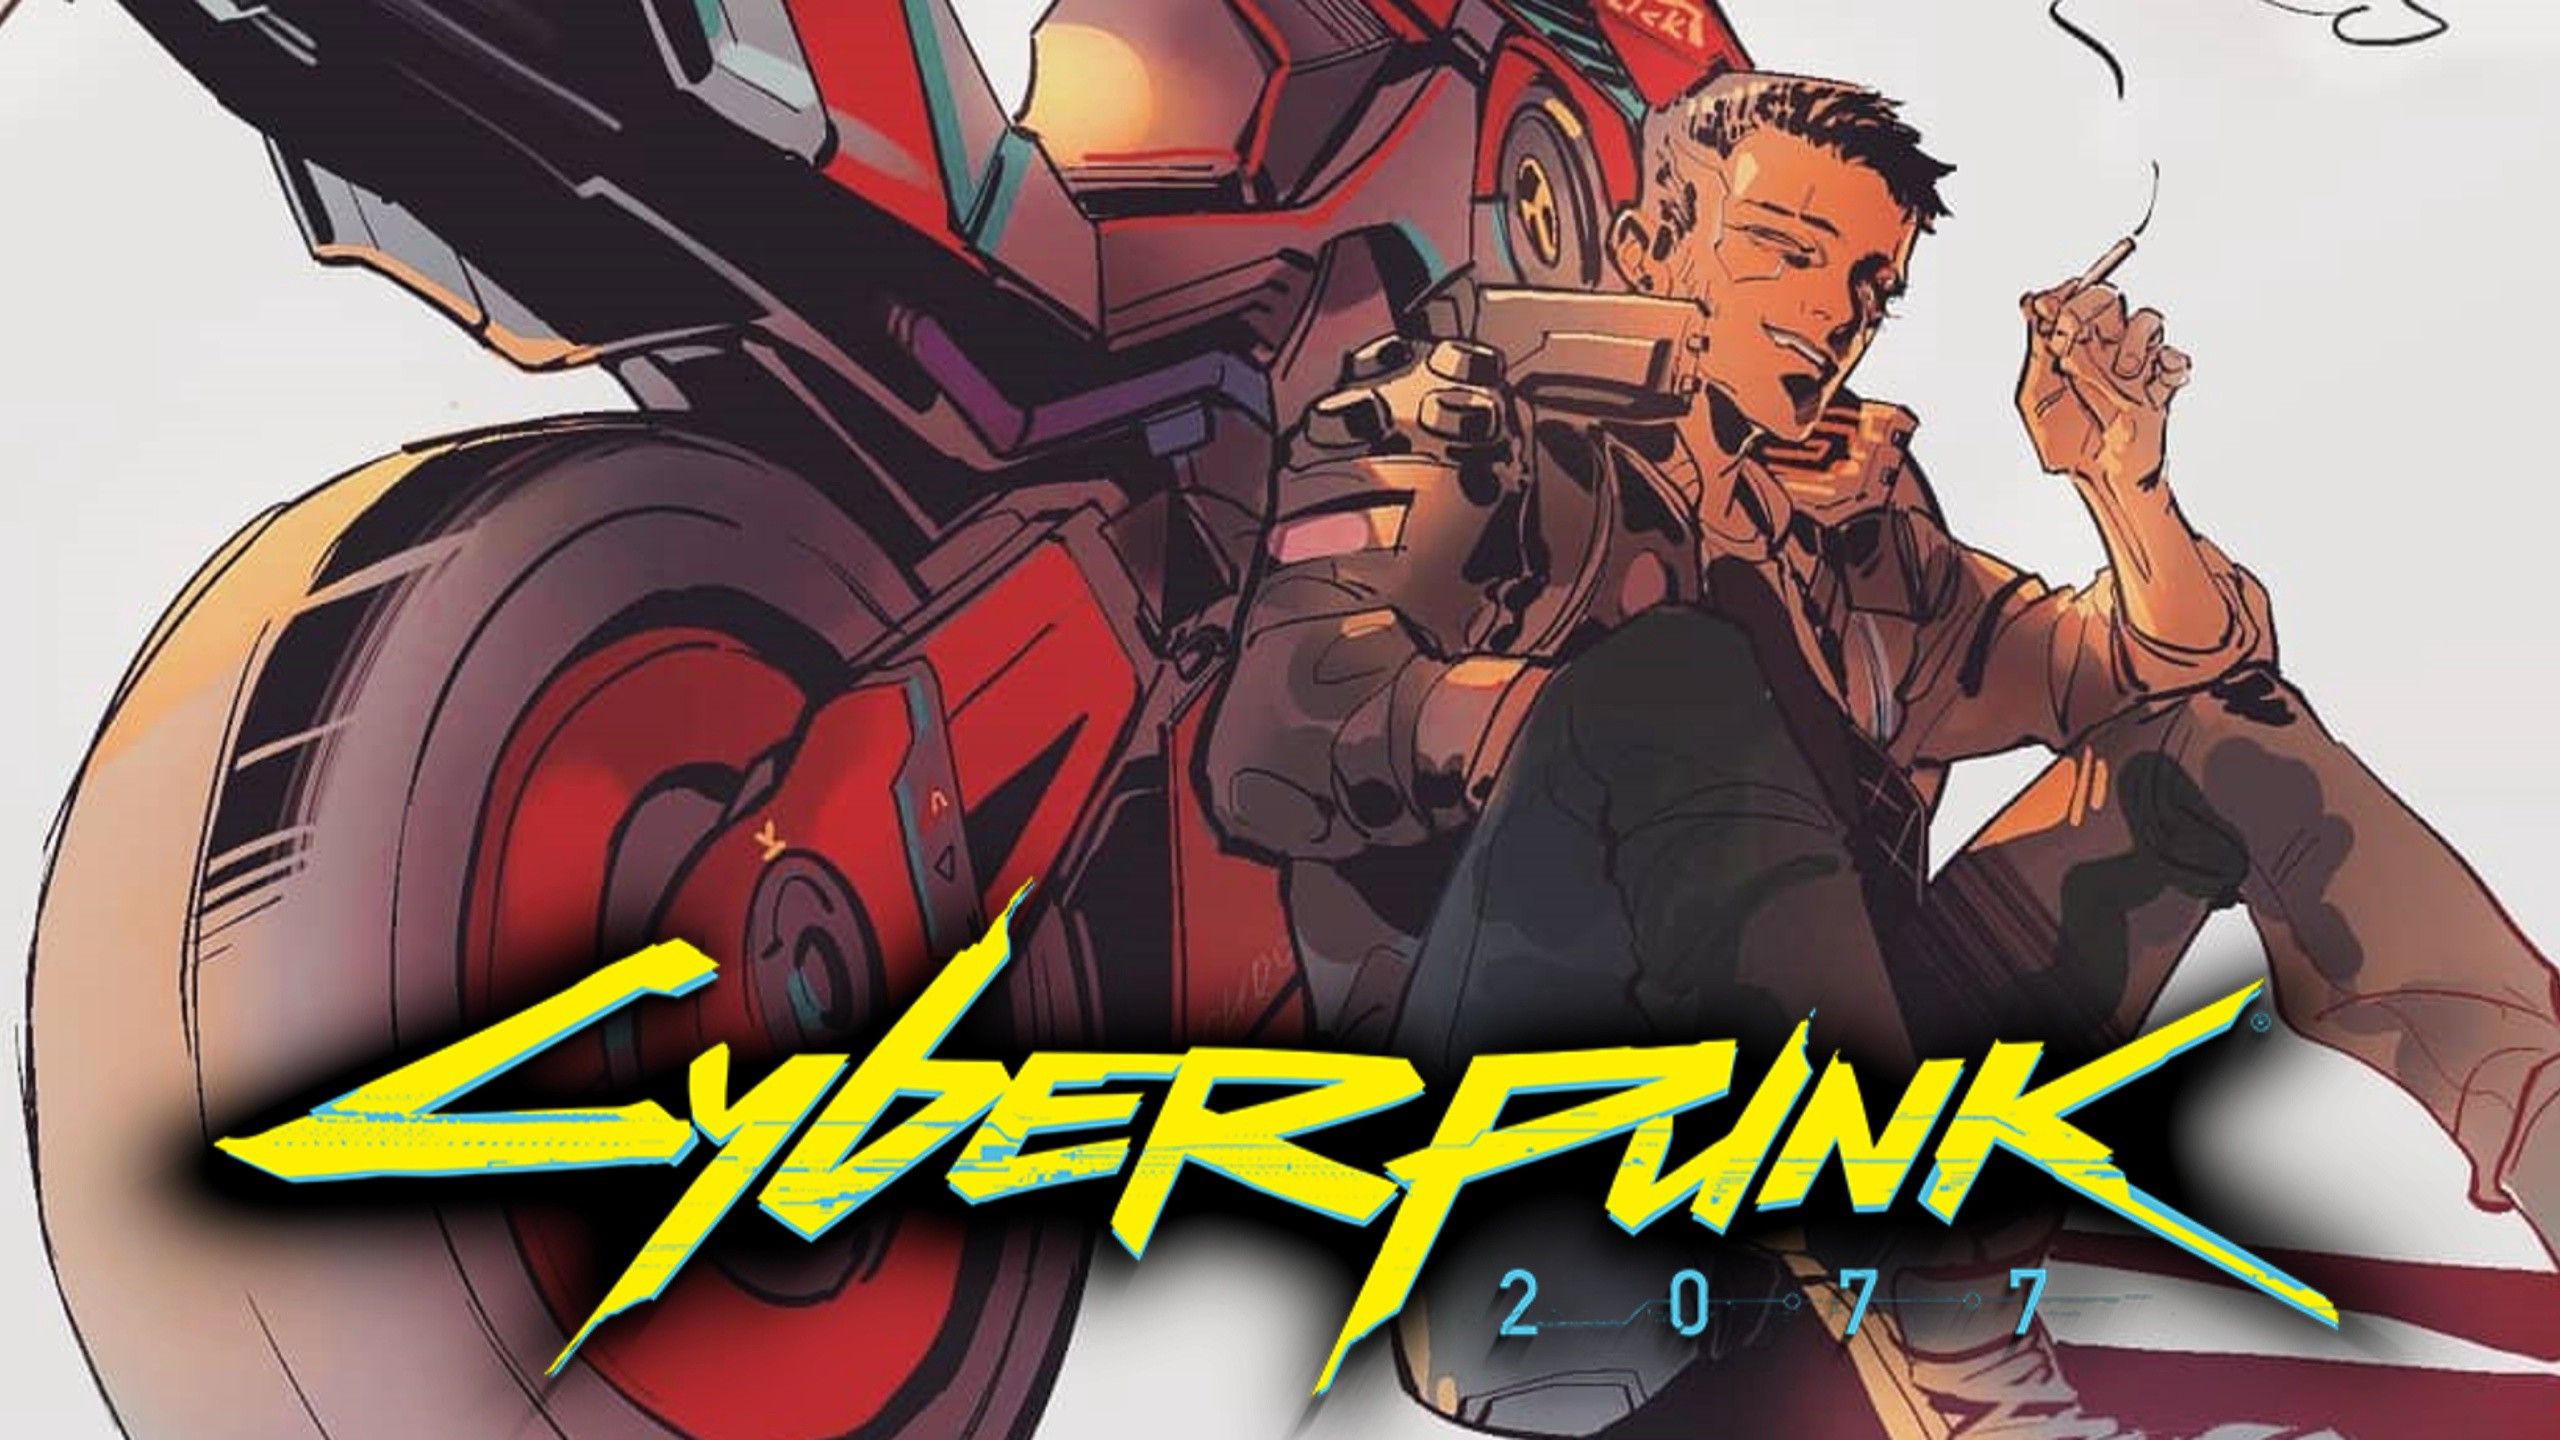 Background Of Cyberpunk Edgerunners